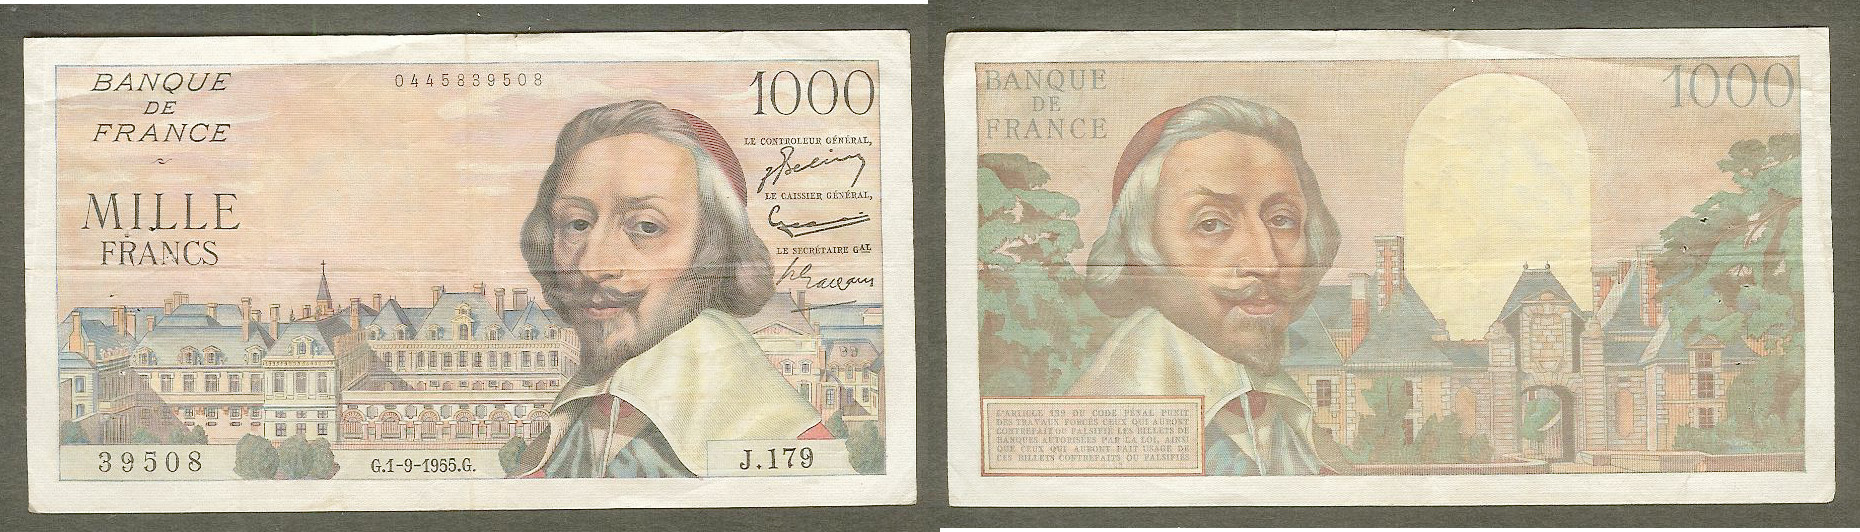 1000 Francs RICHELIEU FRANCE 1.9.1955 TTB